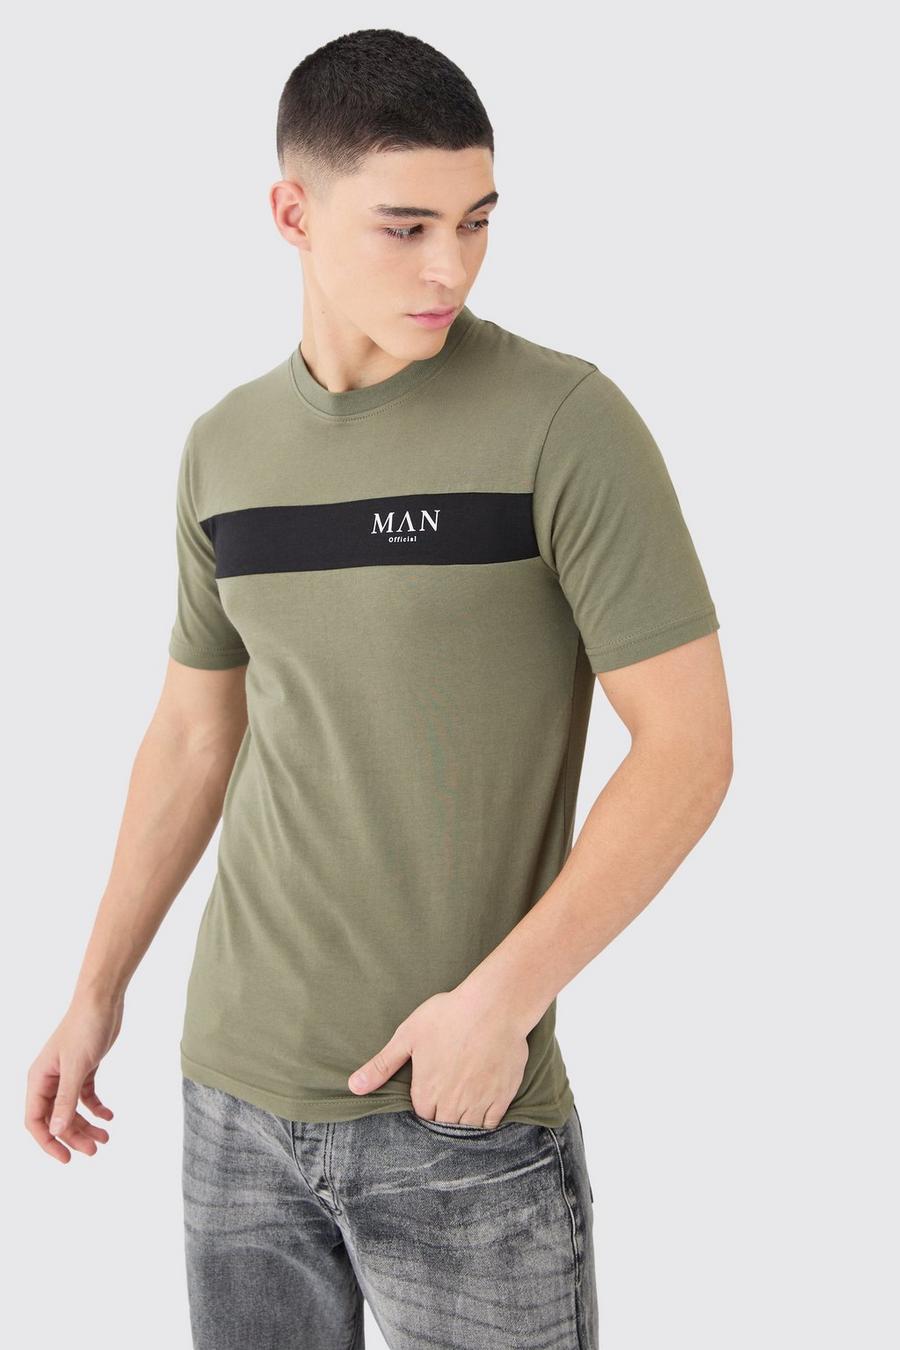 Camiseta MAN con letras romanas ajustada al músculo con colores en bloque, Olive